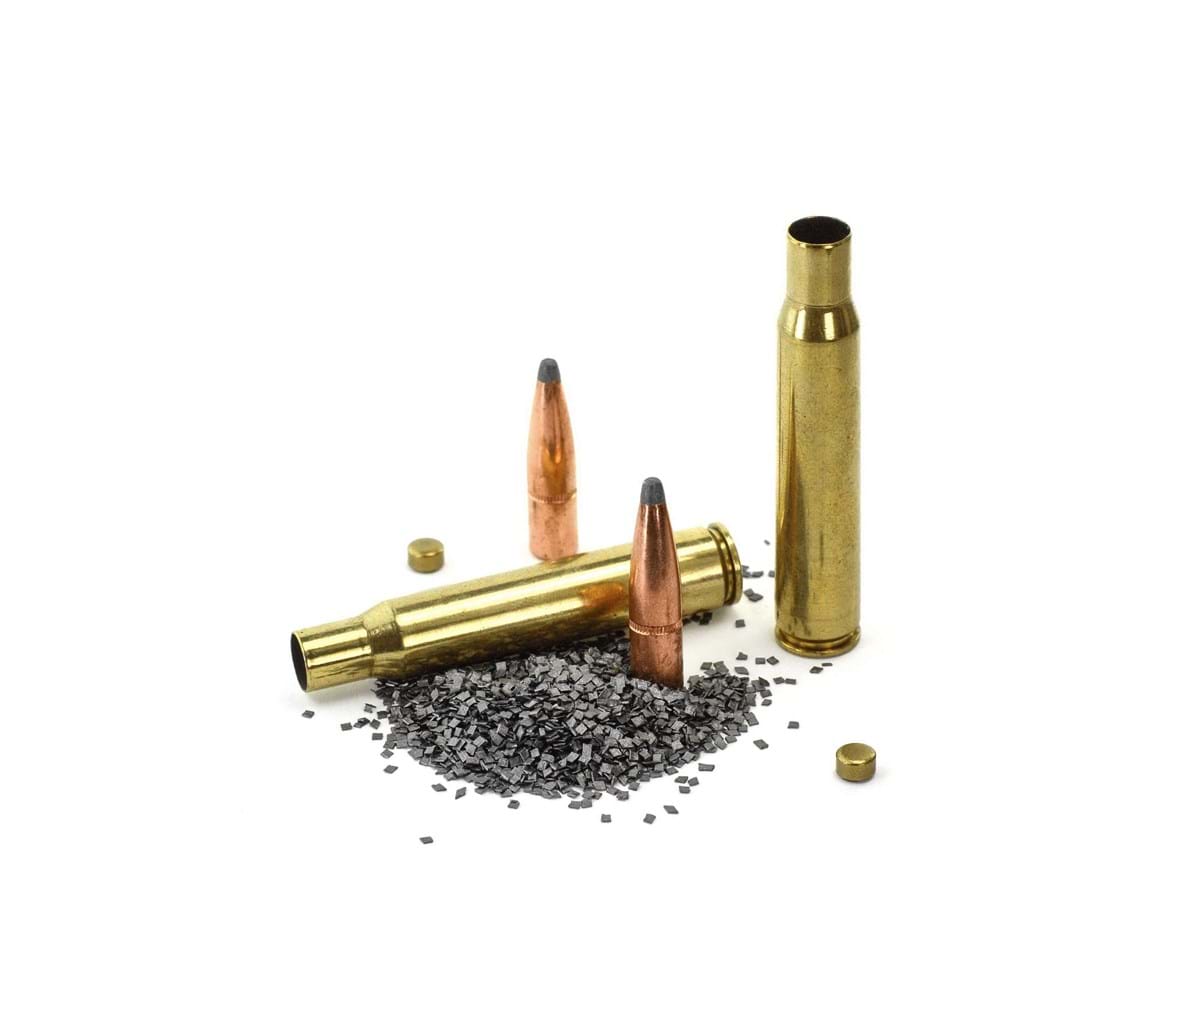 gun ammunition and shells with gun powder spread around